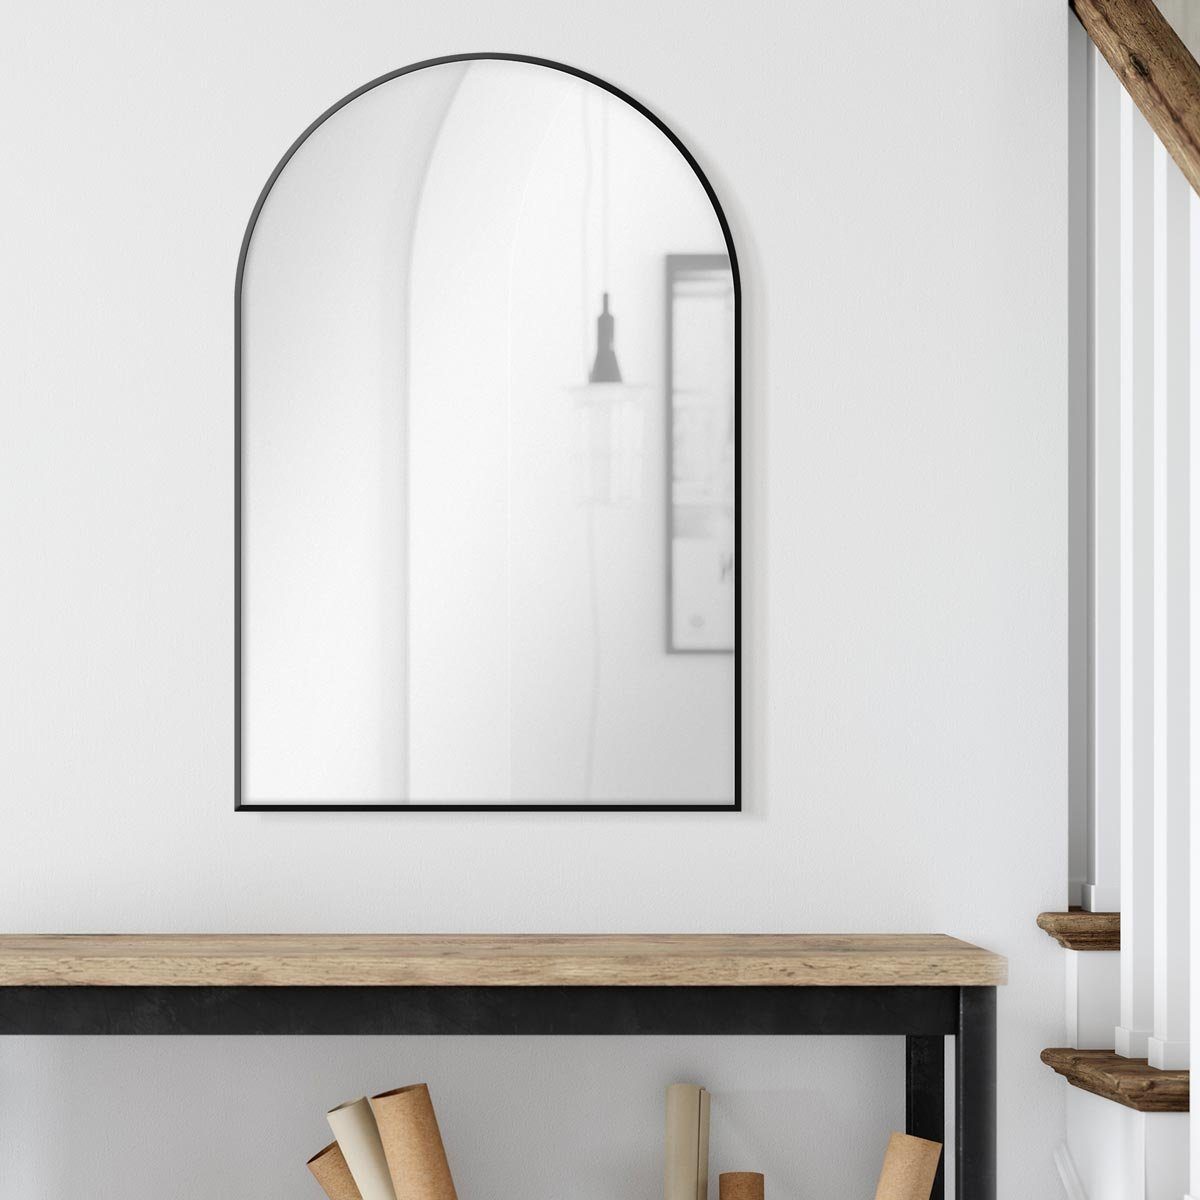 PHOTOLINI Spiegel mit Metallrahmen, Wandspiegel halbrund, schmaler Rahmen 50x75 cm